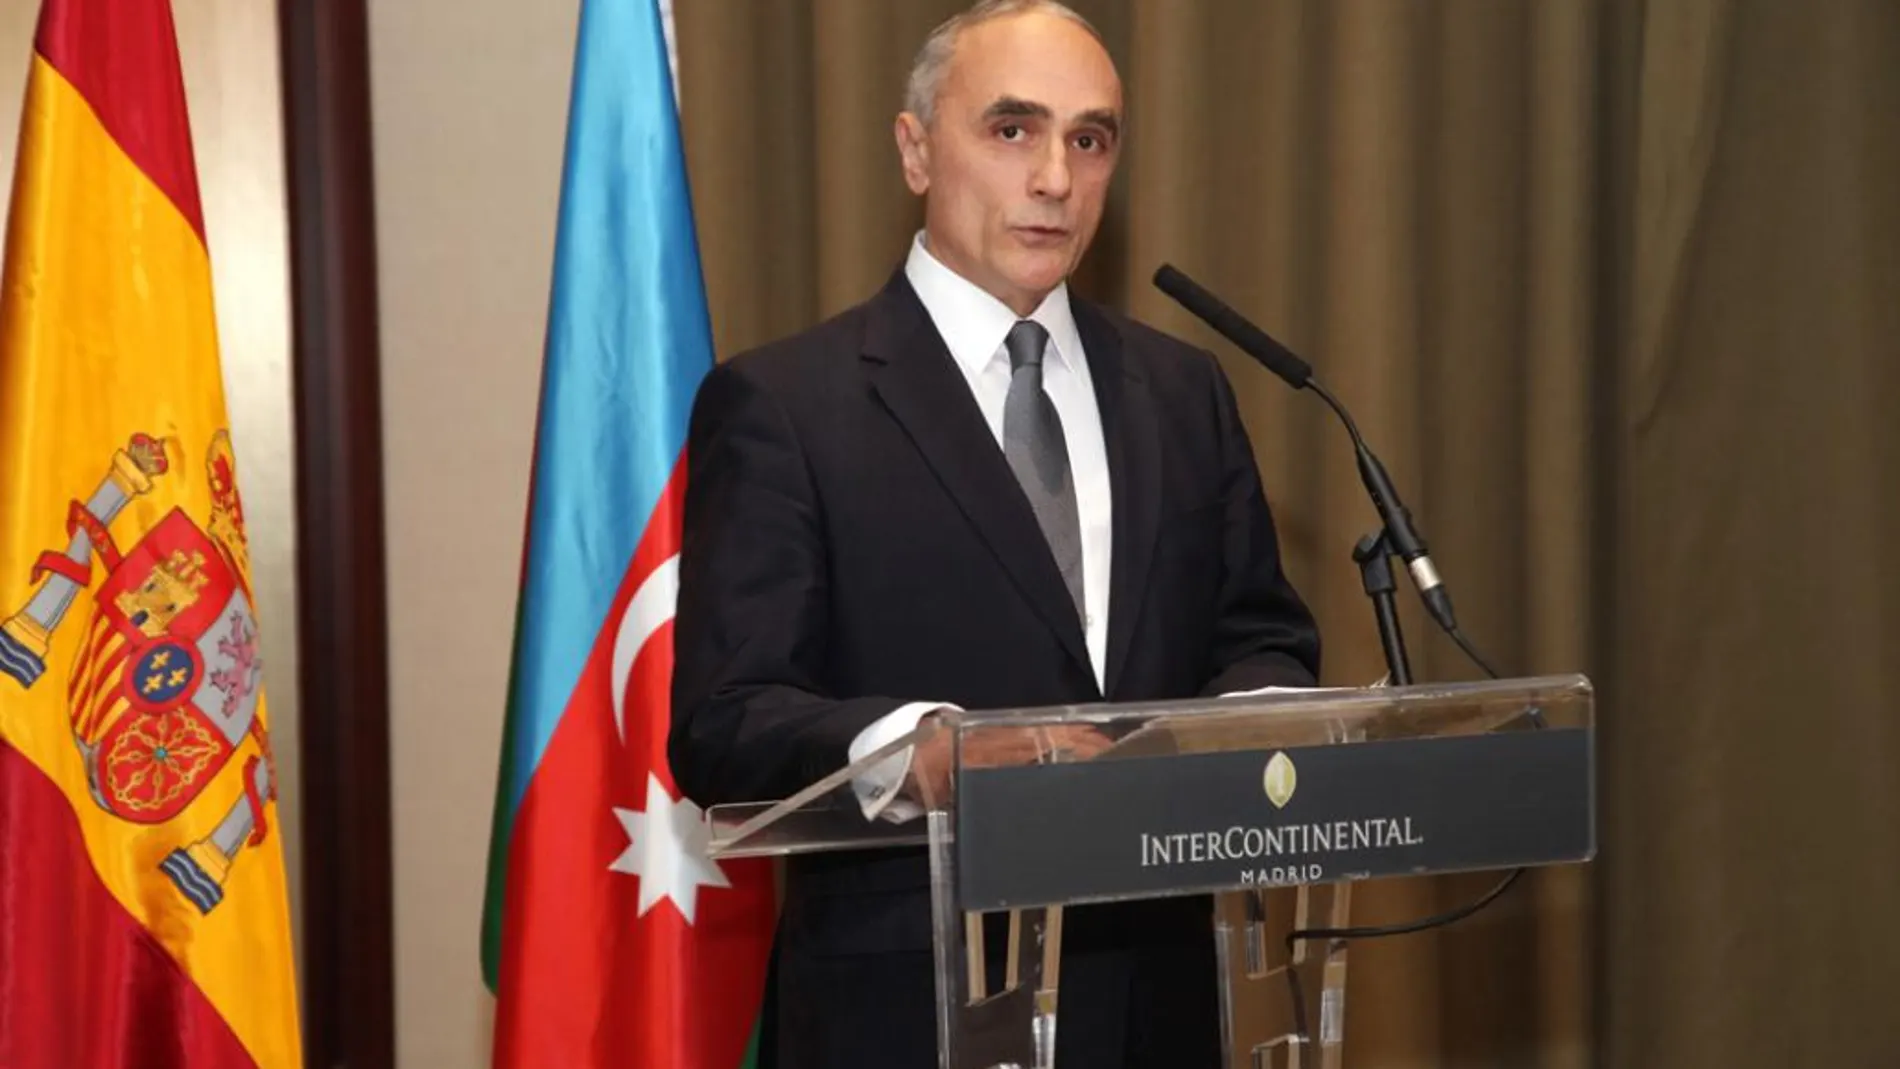 El embajador de Azerbaiyán, don Altai Efendiev pronuncia su discurso por el Día Nacional de su país.